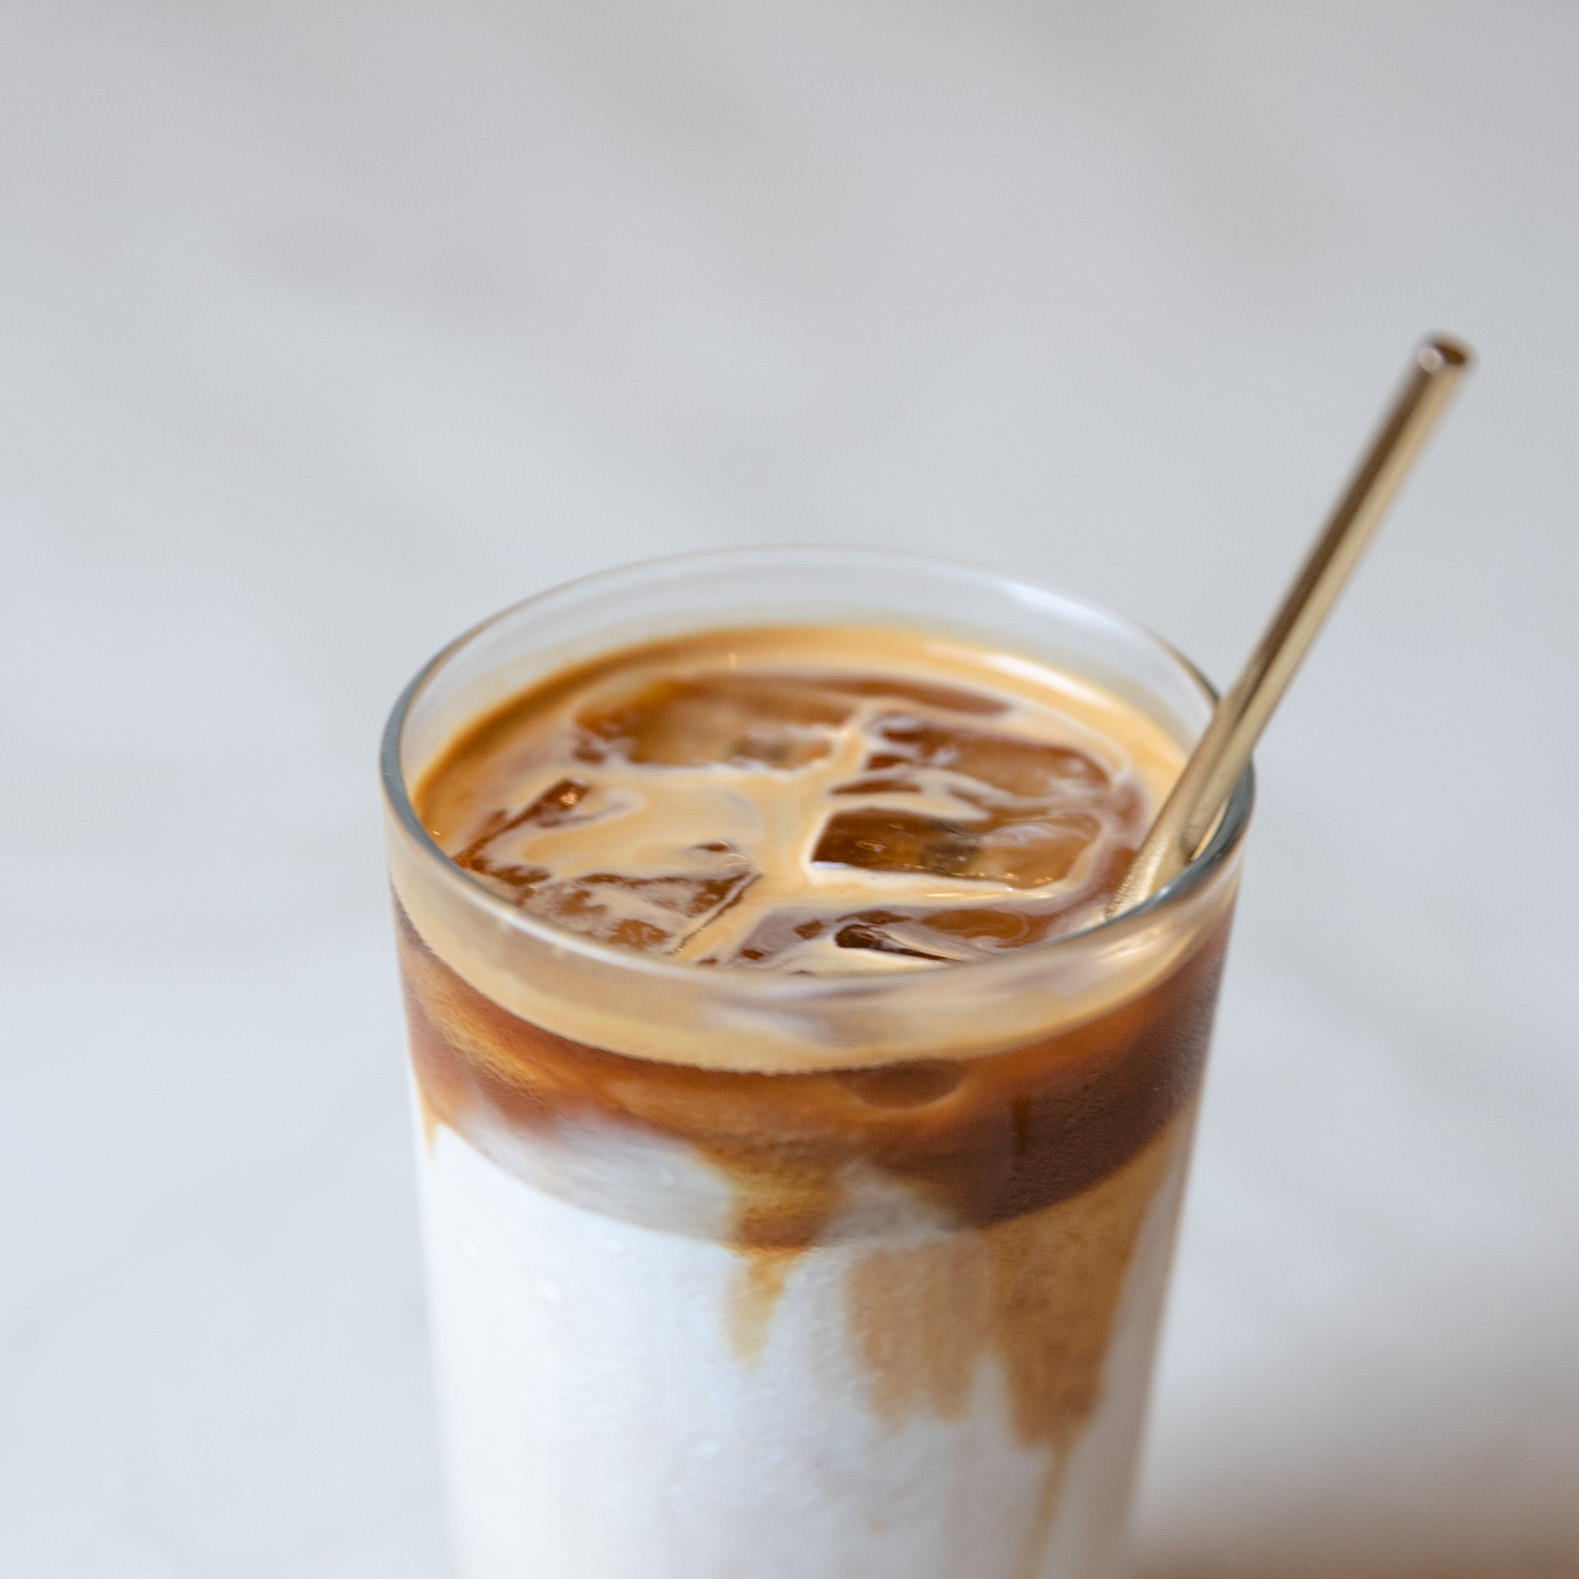 新竹美食-貳參咖啡 23 coffee roasters，新竹咖啡廳推薦。